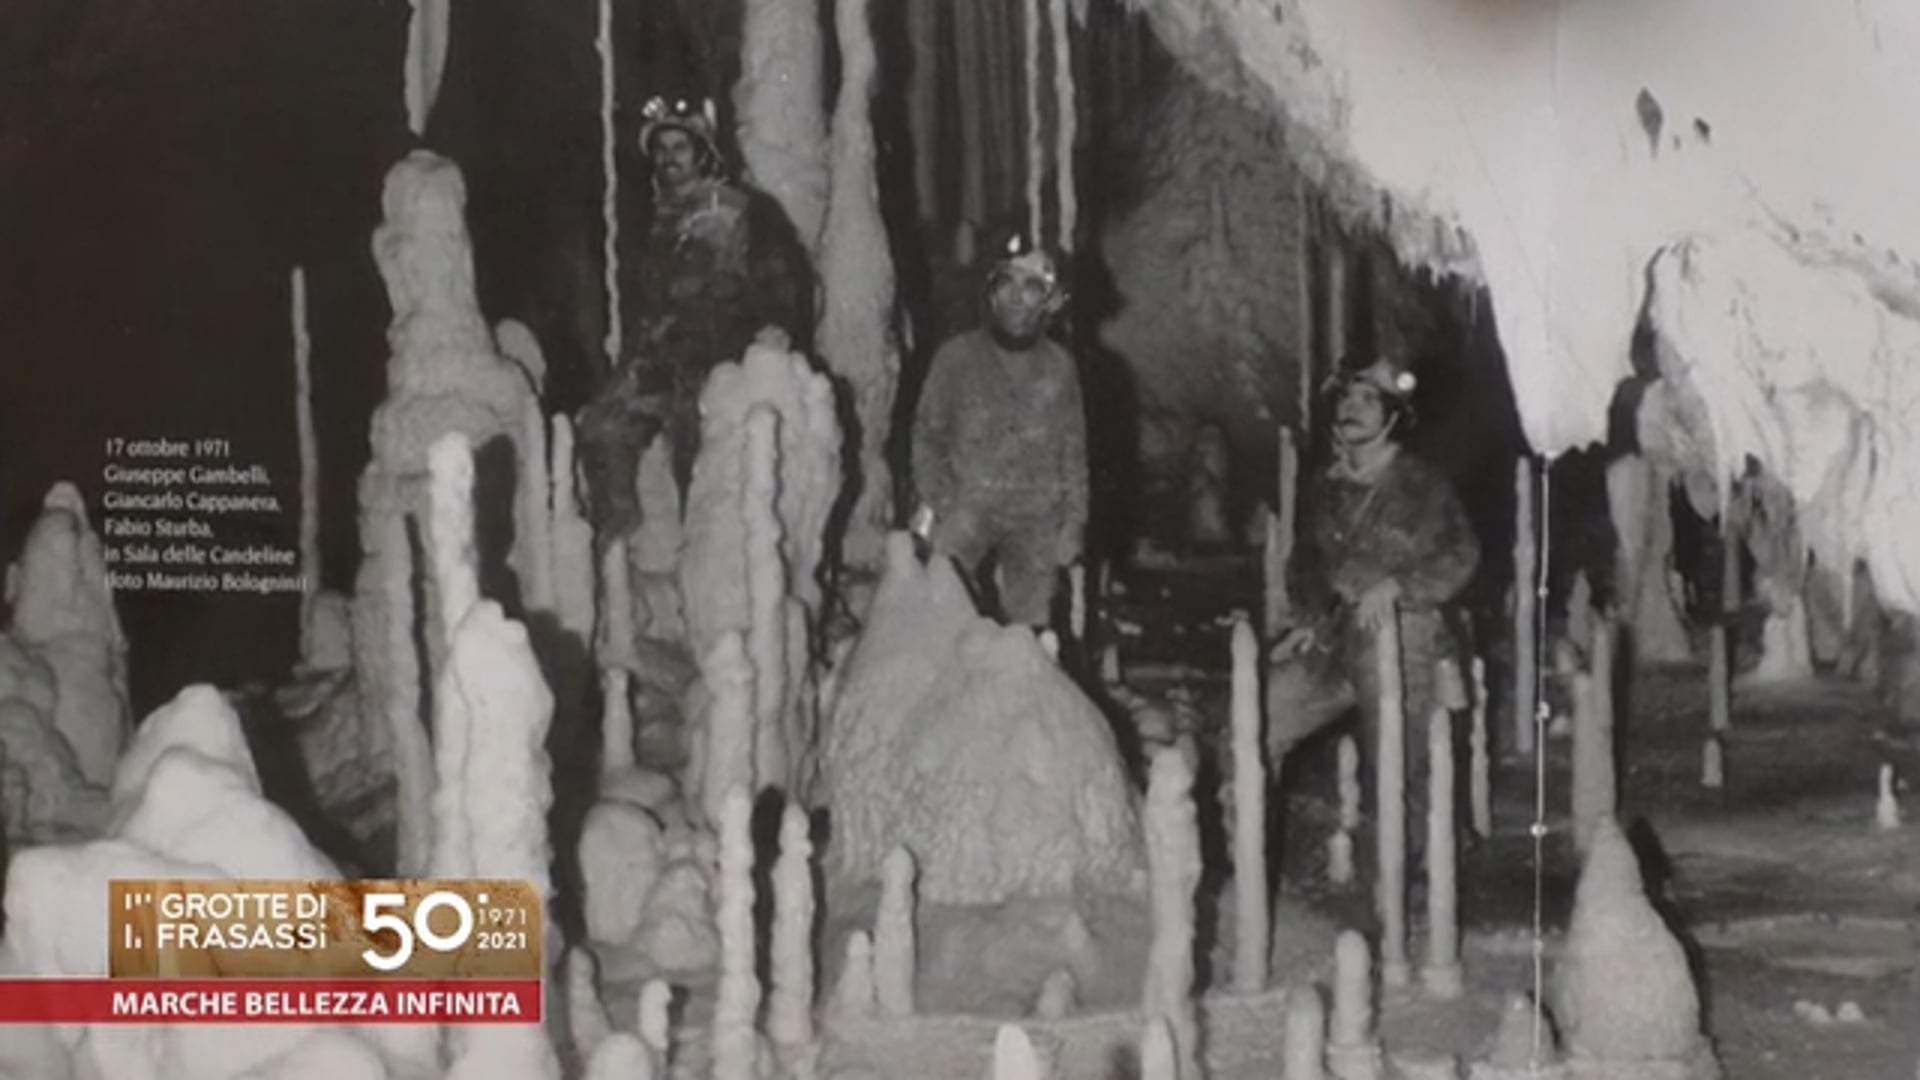 Ecco come andò, il racconto della scoperta delle meravigliose Grotte di Frasassi 50 anni fa - VIDEO